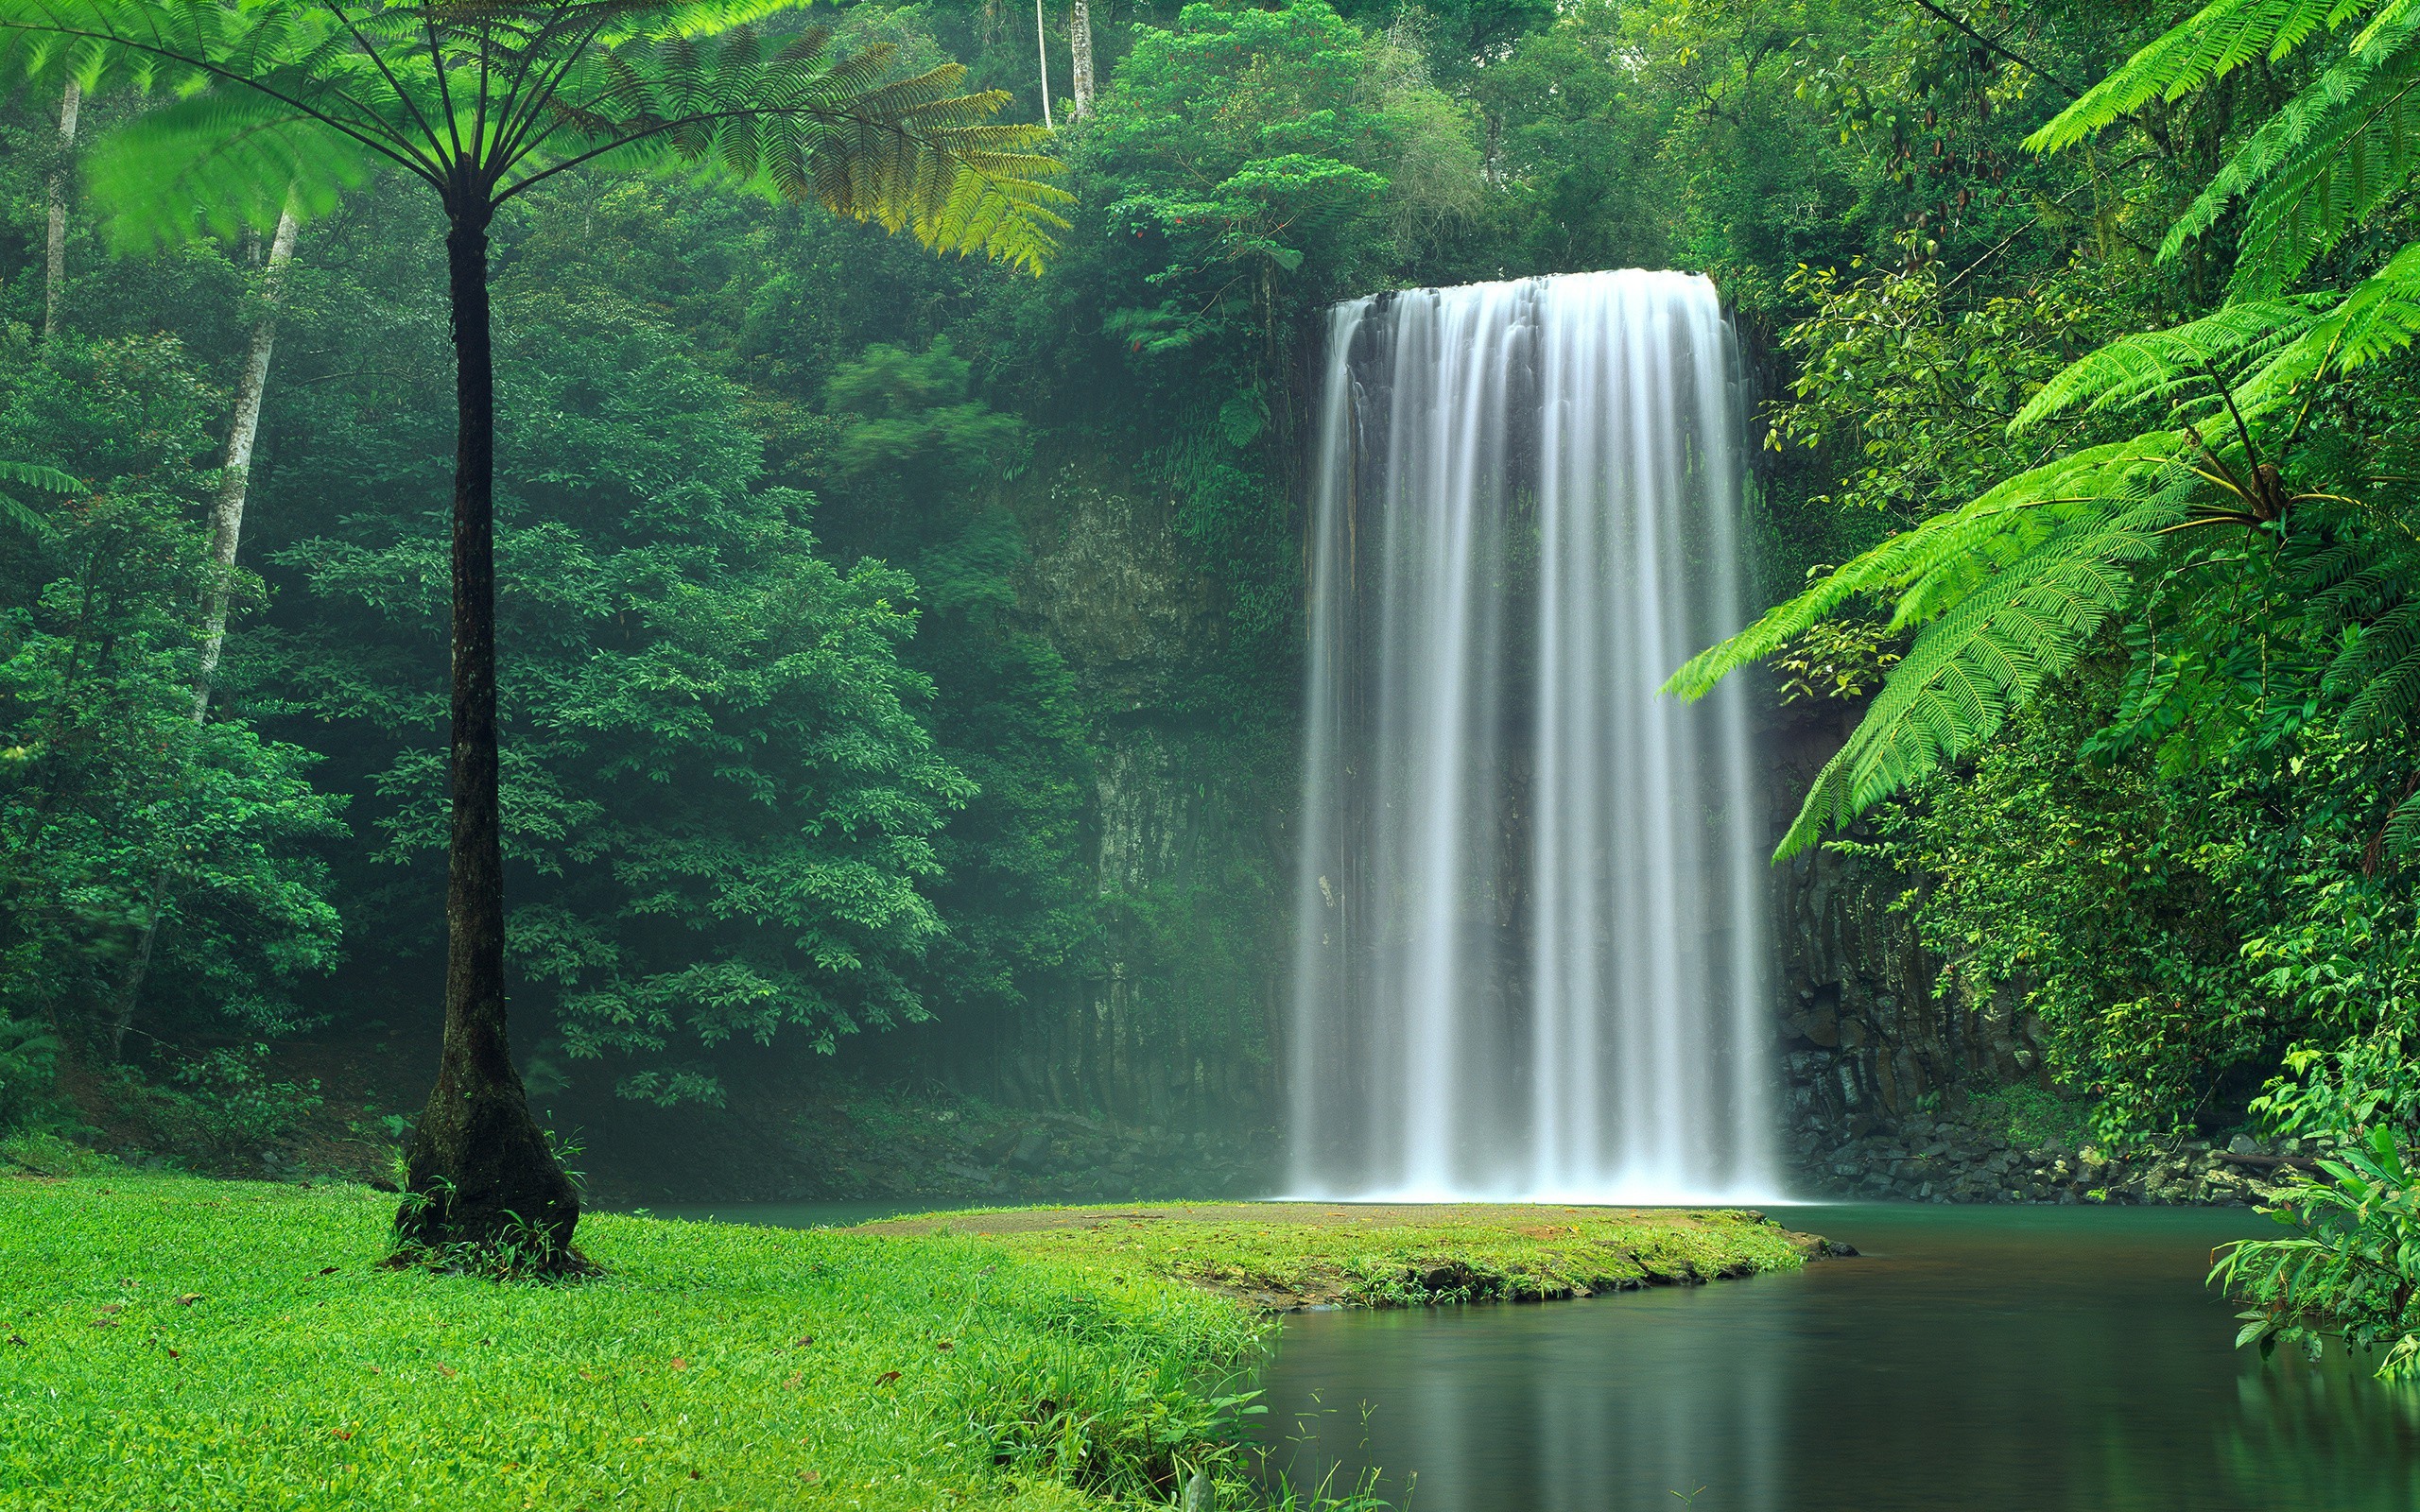 Живописный водопад между зеленых деревьев 